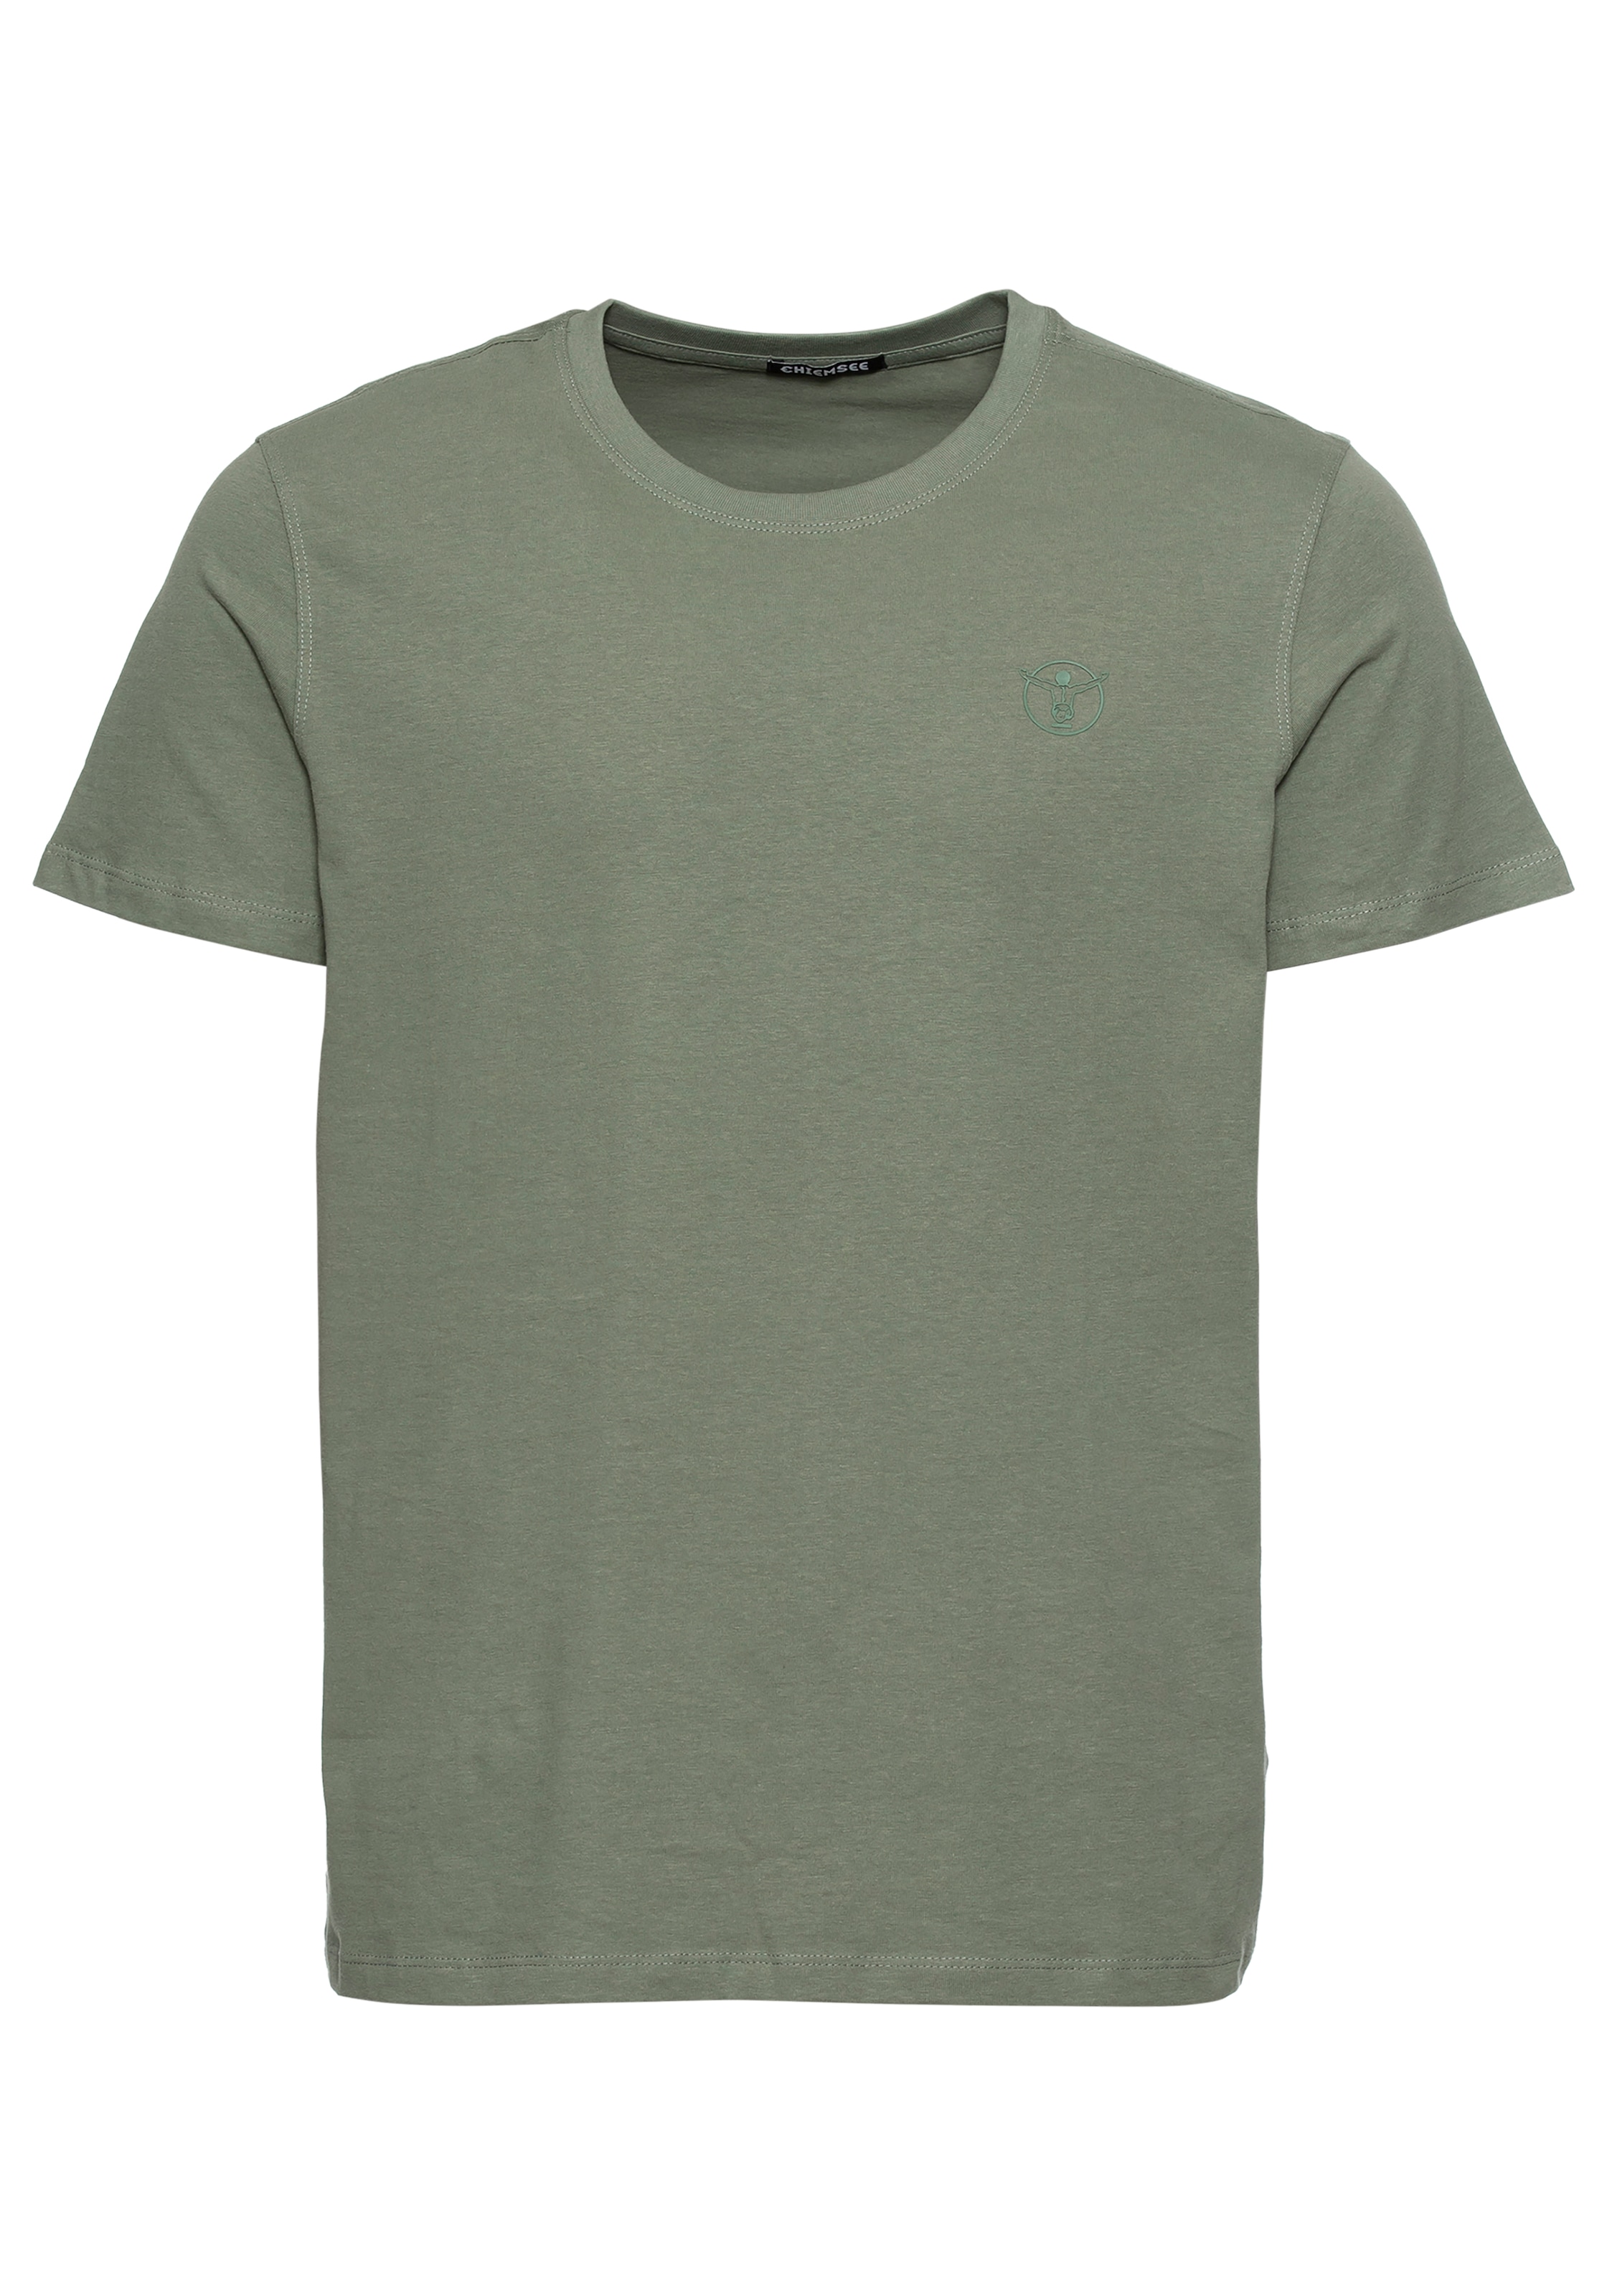 Chiemsee T-Shirt »H T-Shirt 3 Pk«